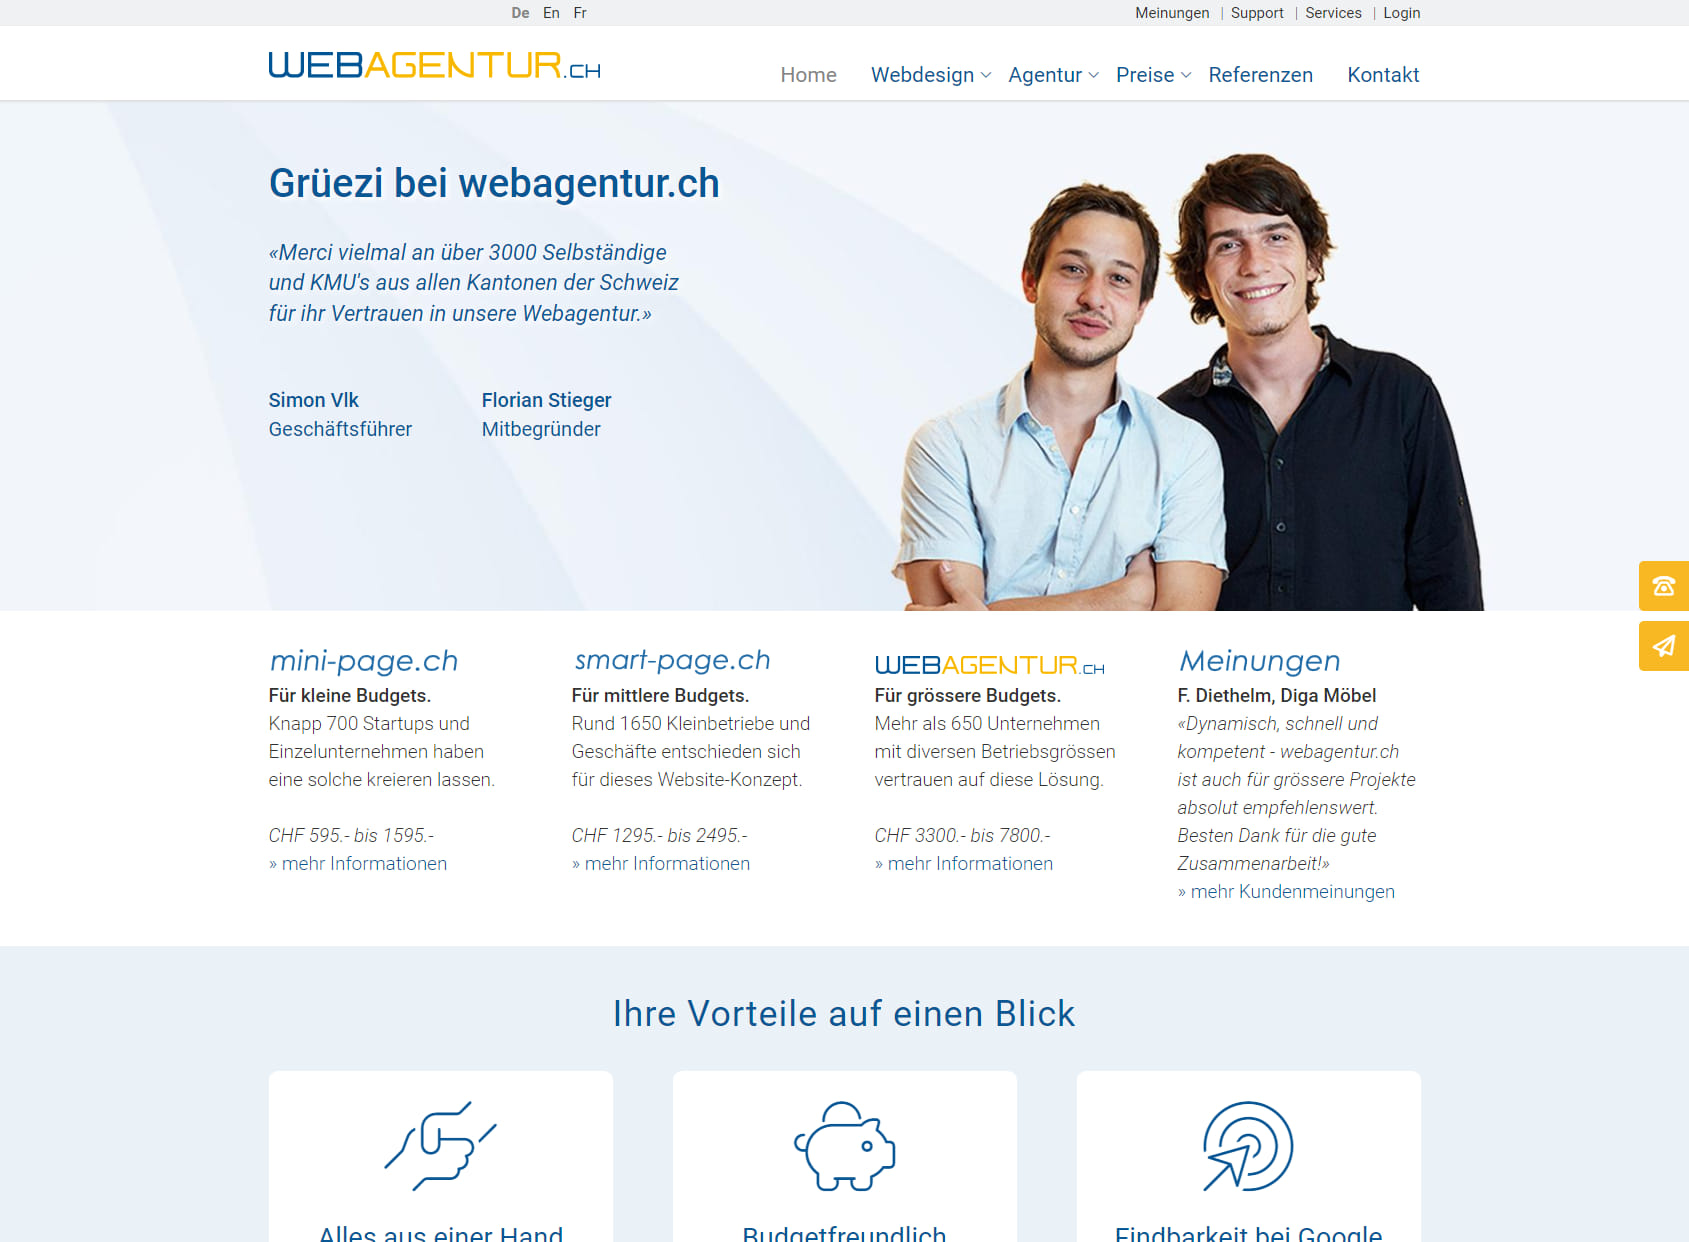 webagentur.ch